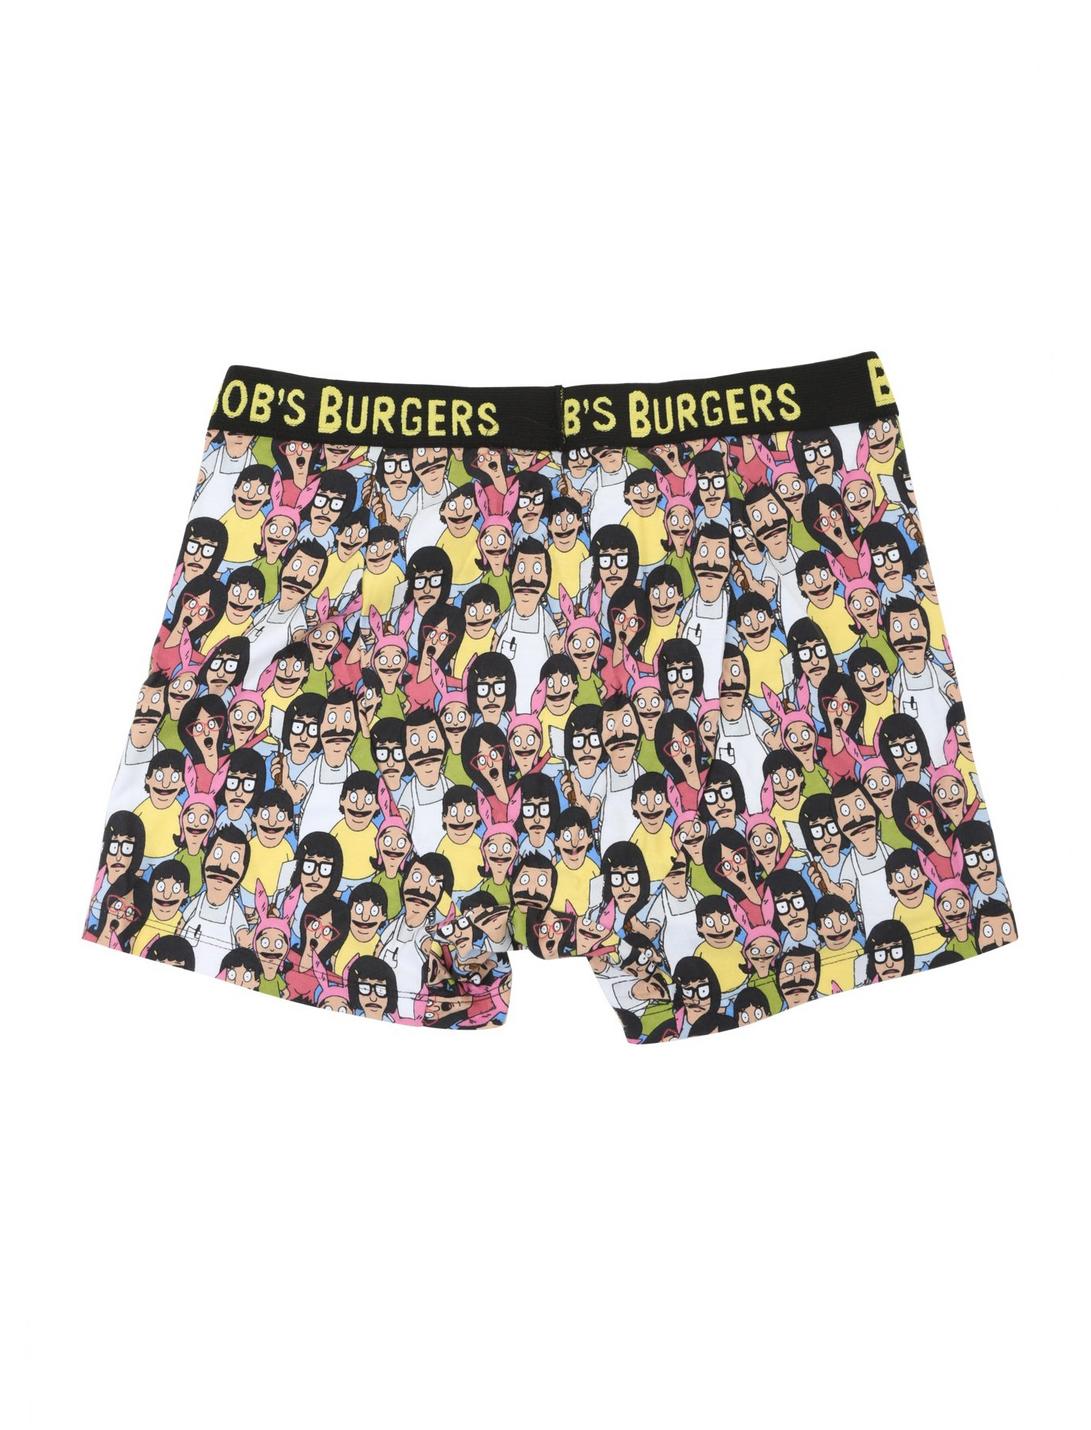 Bob's Burgers Boxer Briefs, BLACK, hi-res